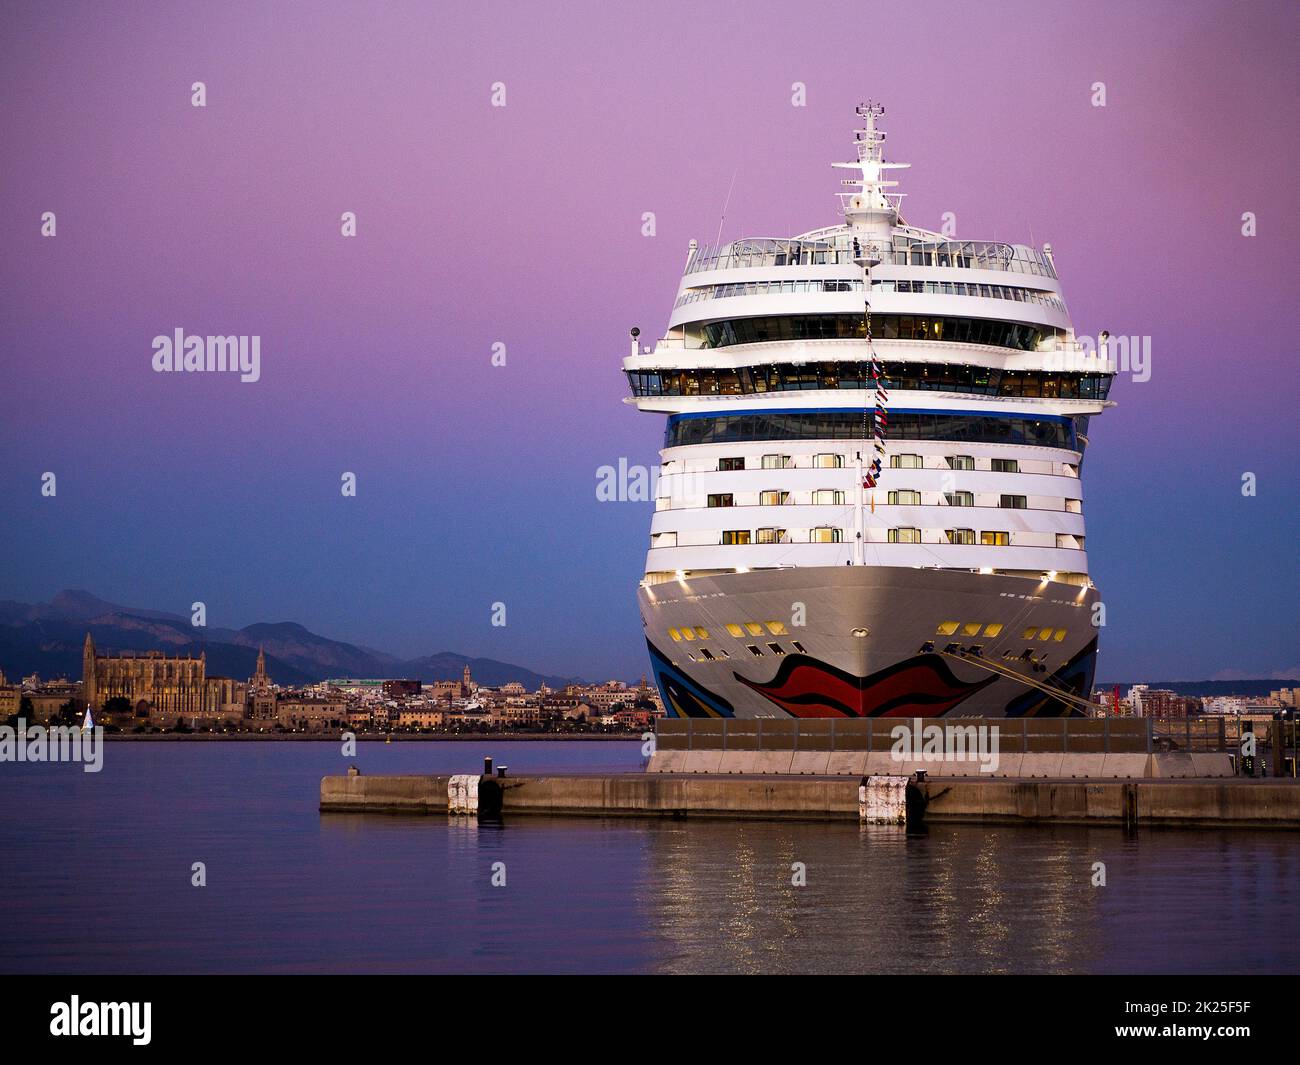 Spain - Mallorca, Aidastella in the Harbor of Palma de Mallorca in the Mediterranean Sea Stock Photo